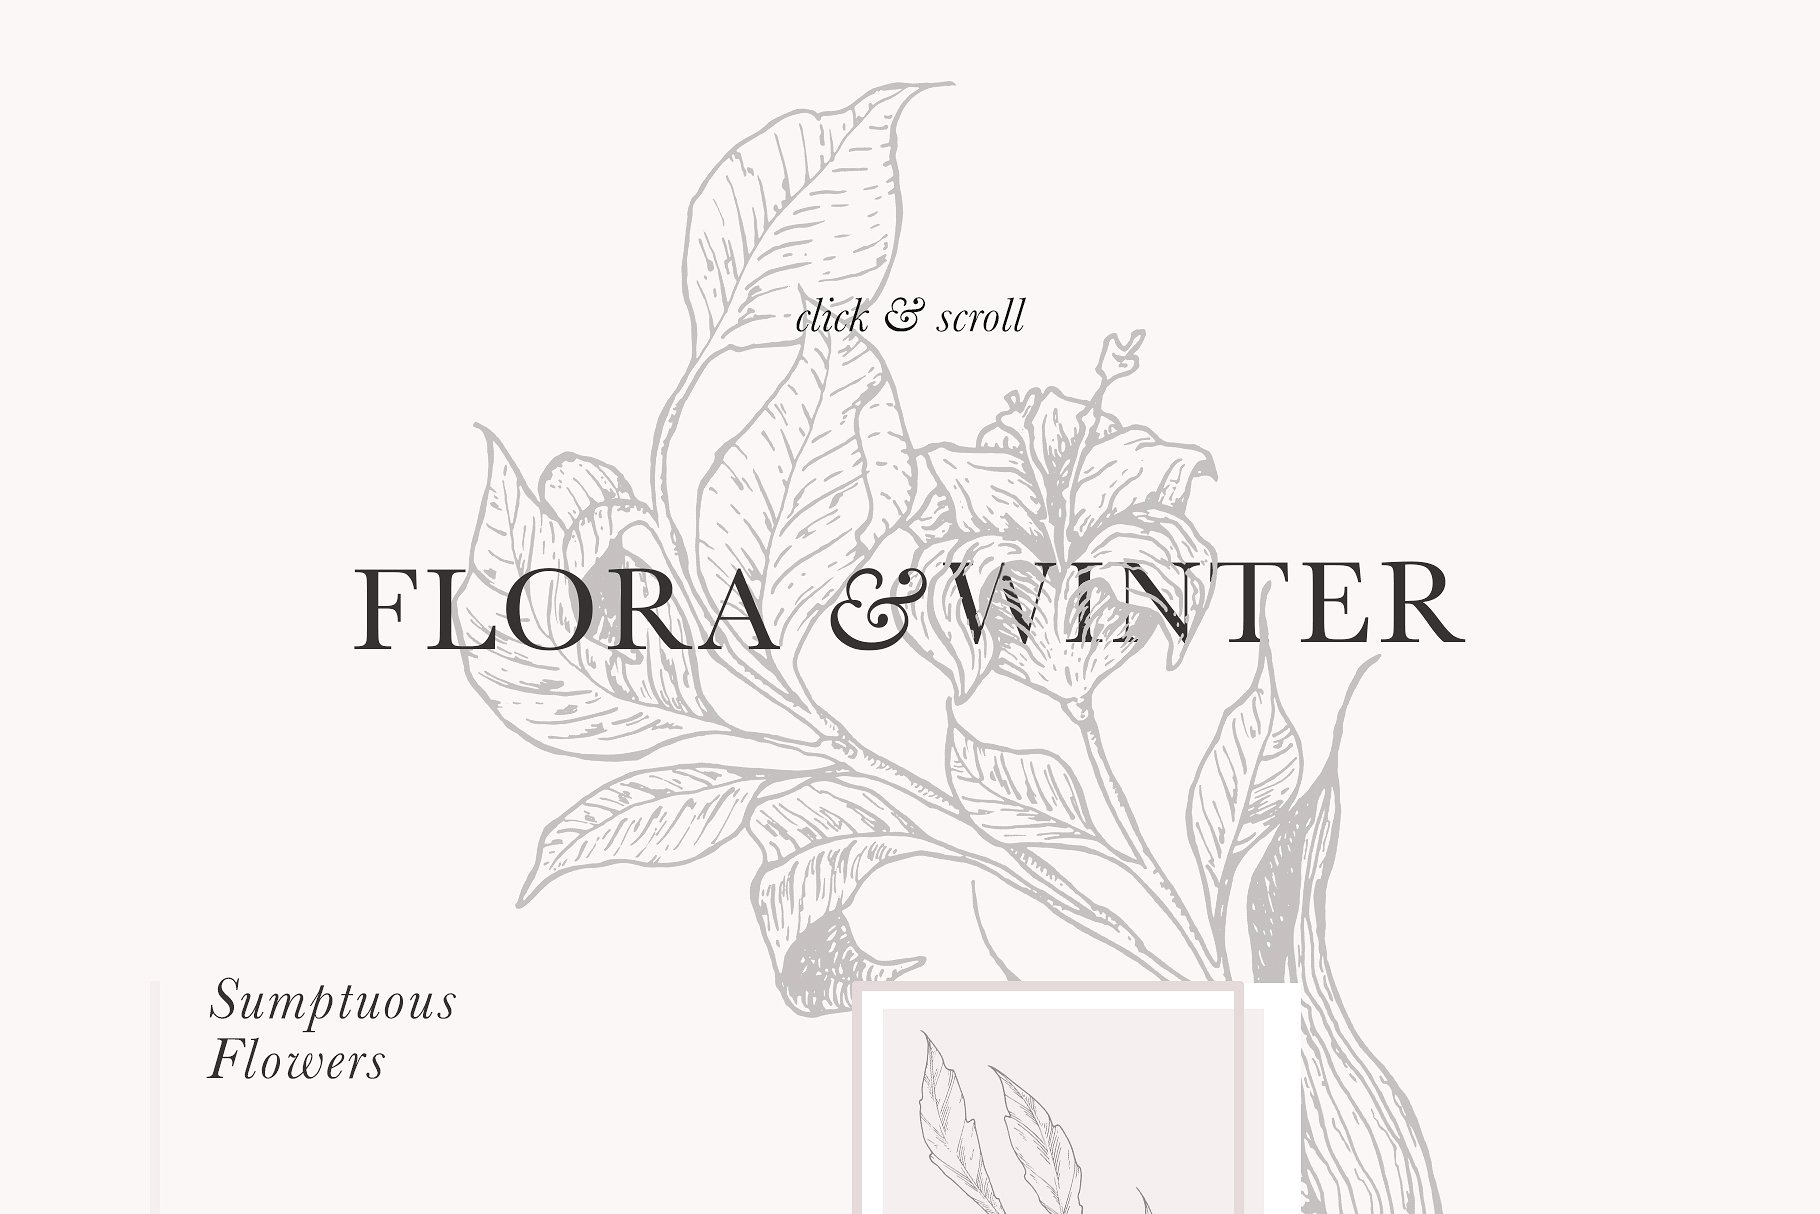 超高清分辨率花卉图案与插图 Floral Patterns & Illustrations [2.19GB]插图(6)